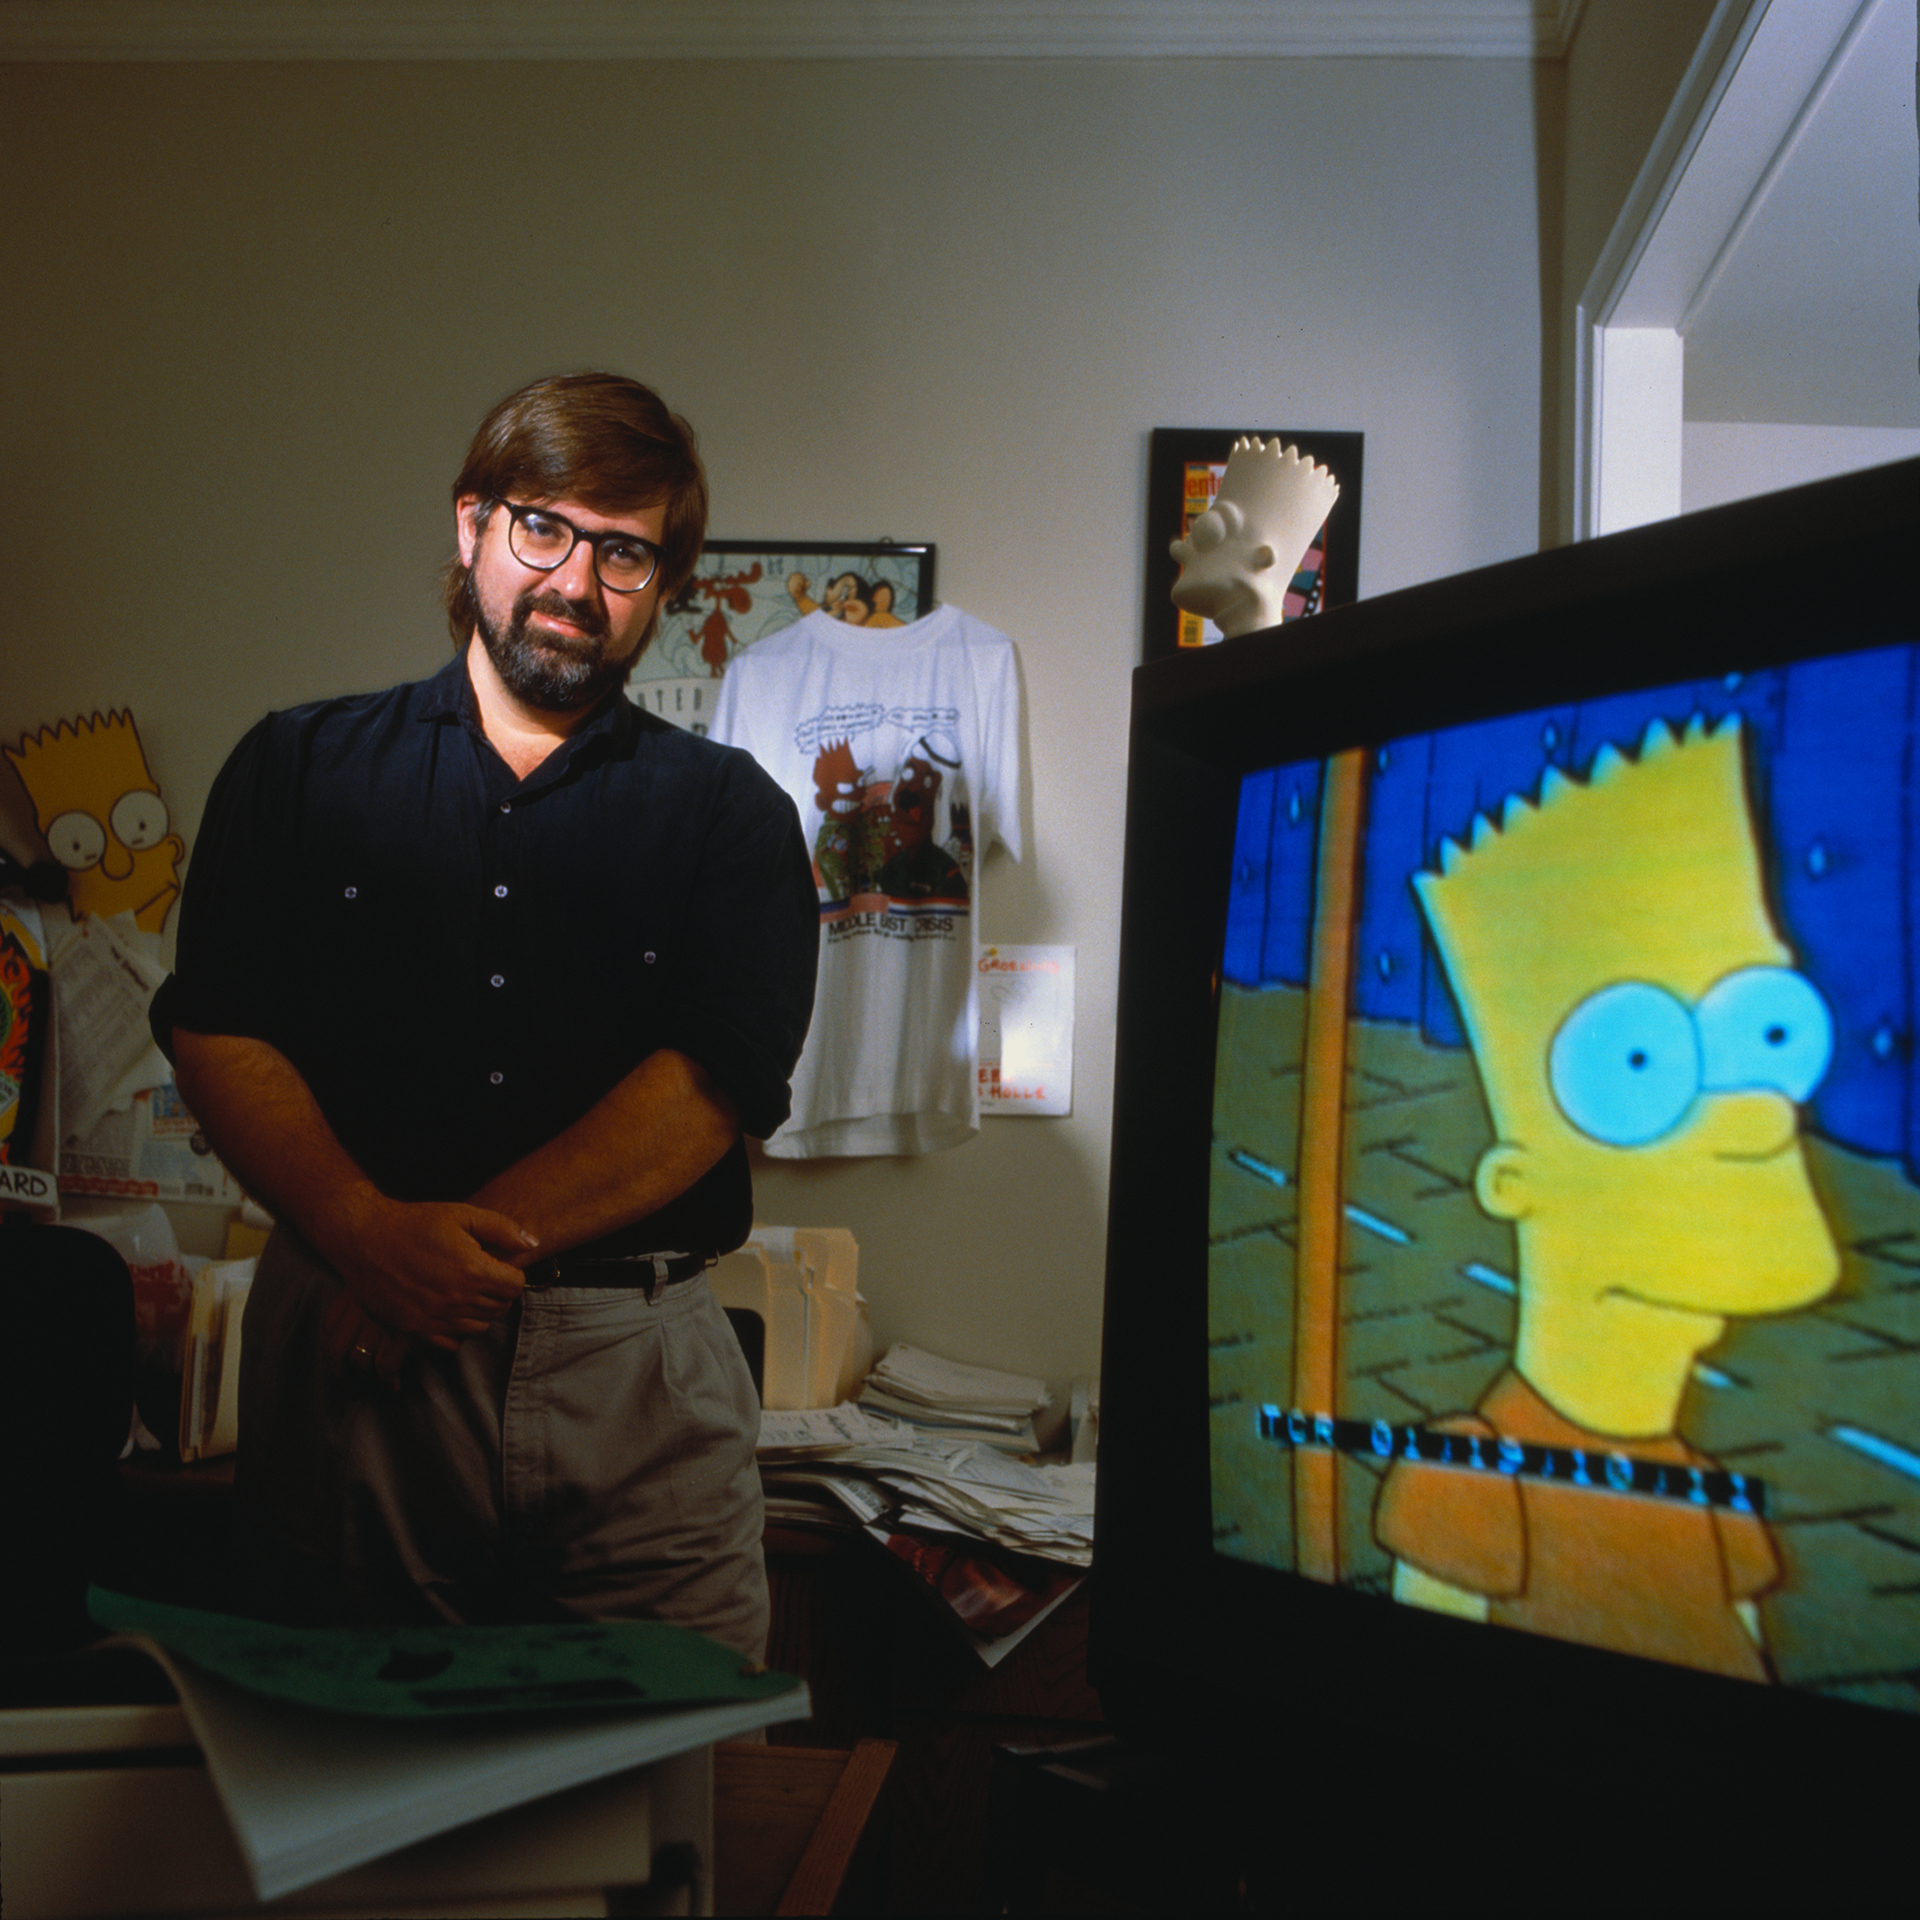 Matt Groening apenas los Simpsons se convirtieron en un fenómeno mundial. El primer capítulo se emitió en diciembre de 1989. En los años siguientes se convirtieron en una referencia cultural ineludible
(Gary Moss/Corbis via Getty Images)